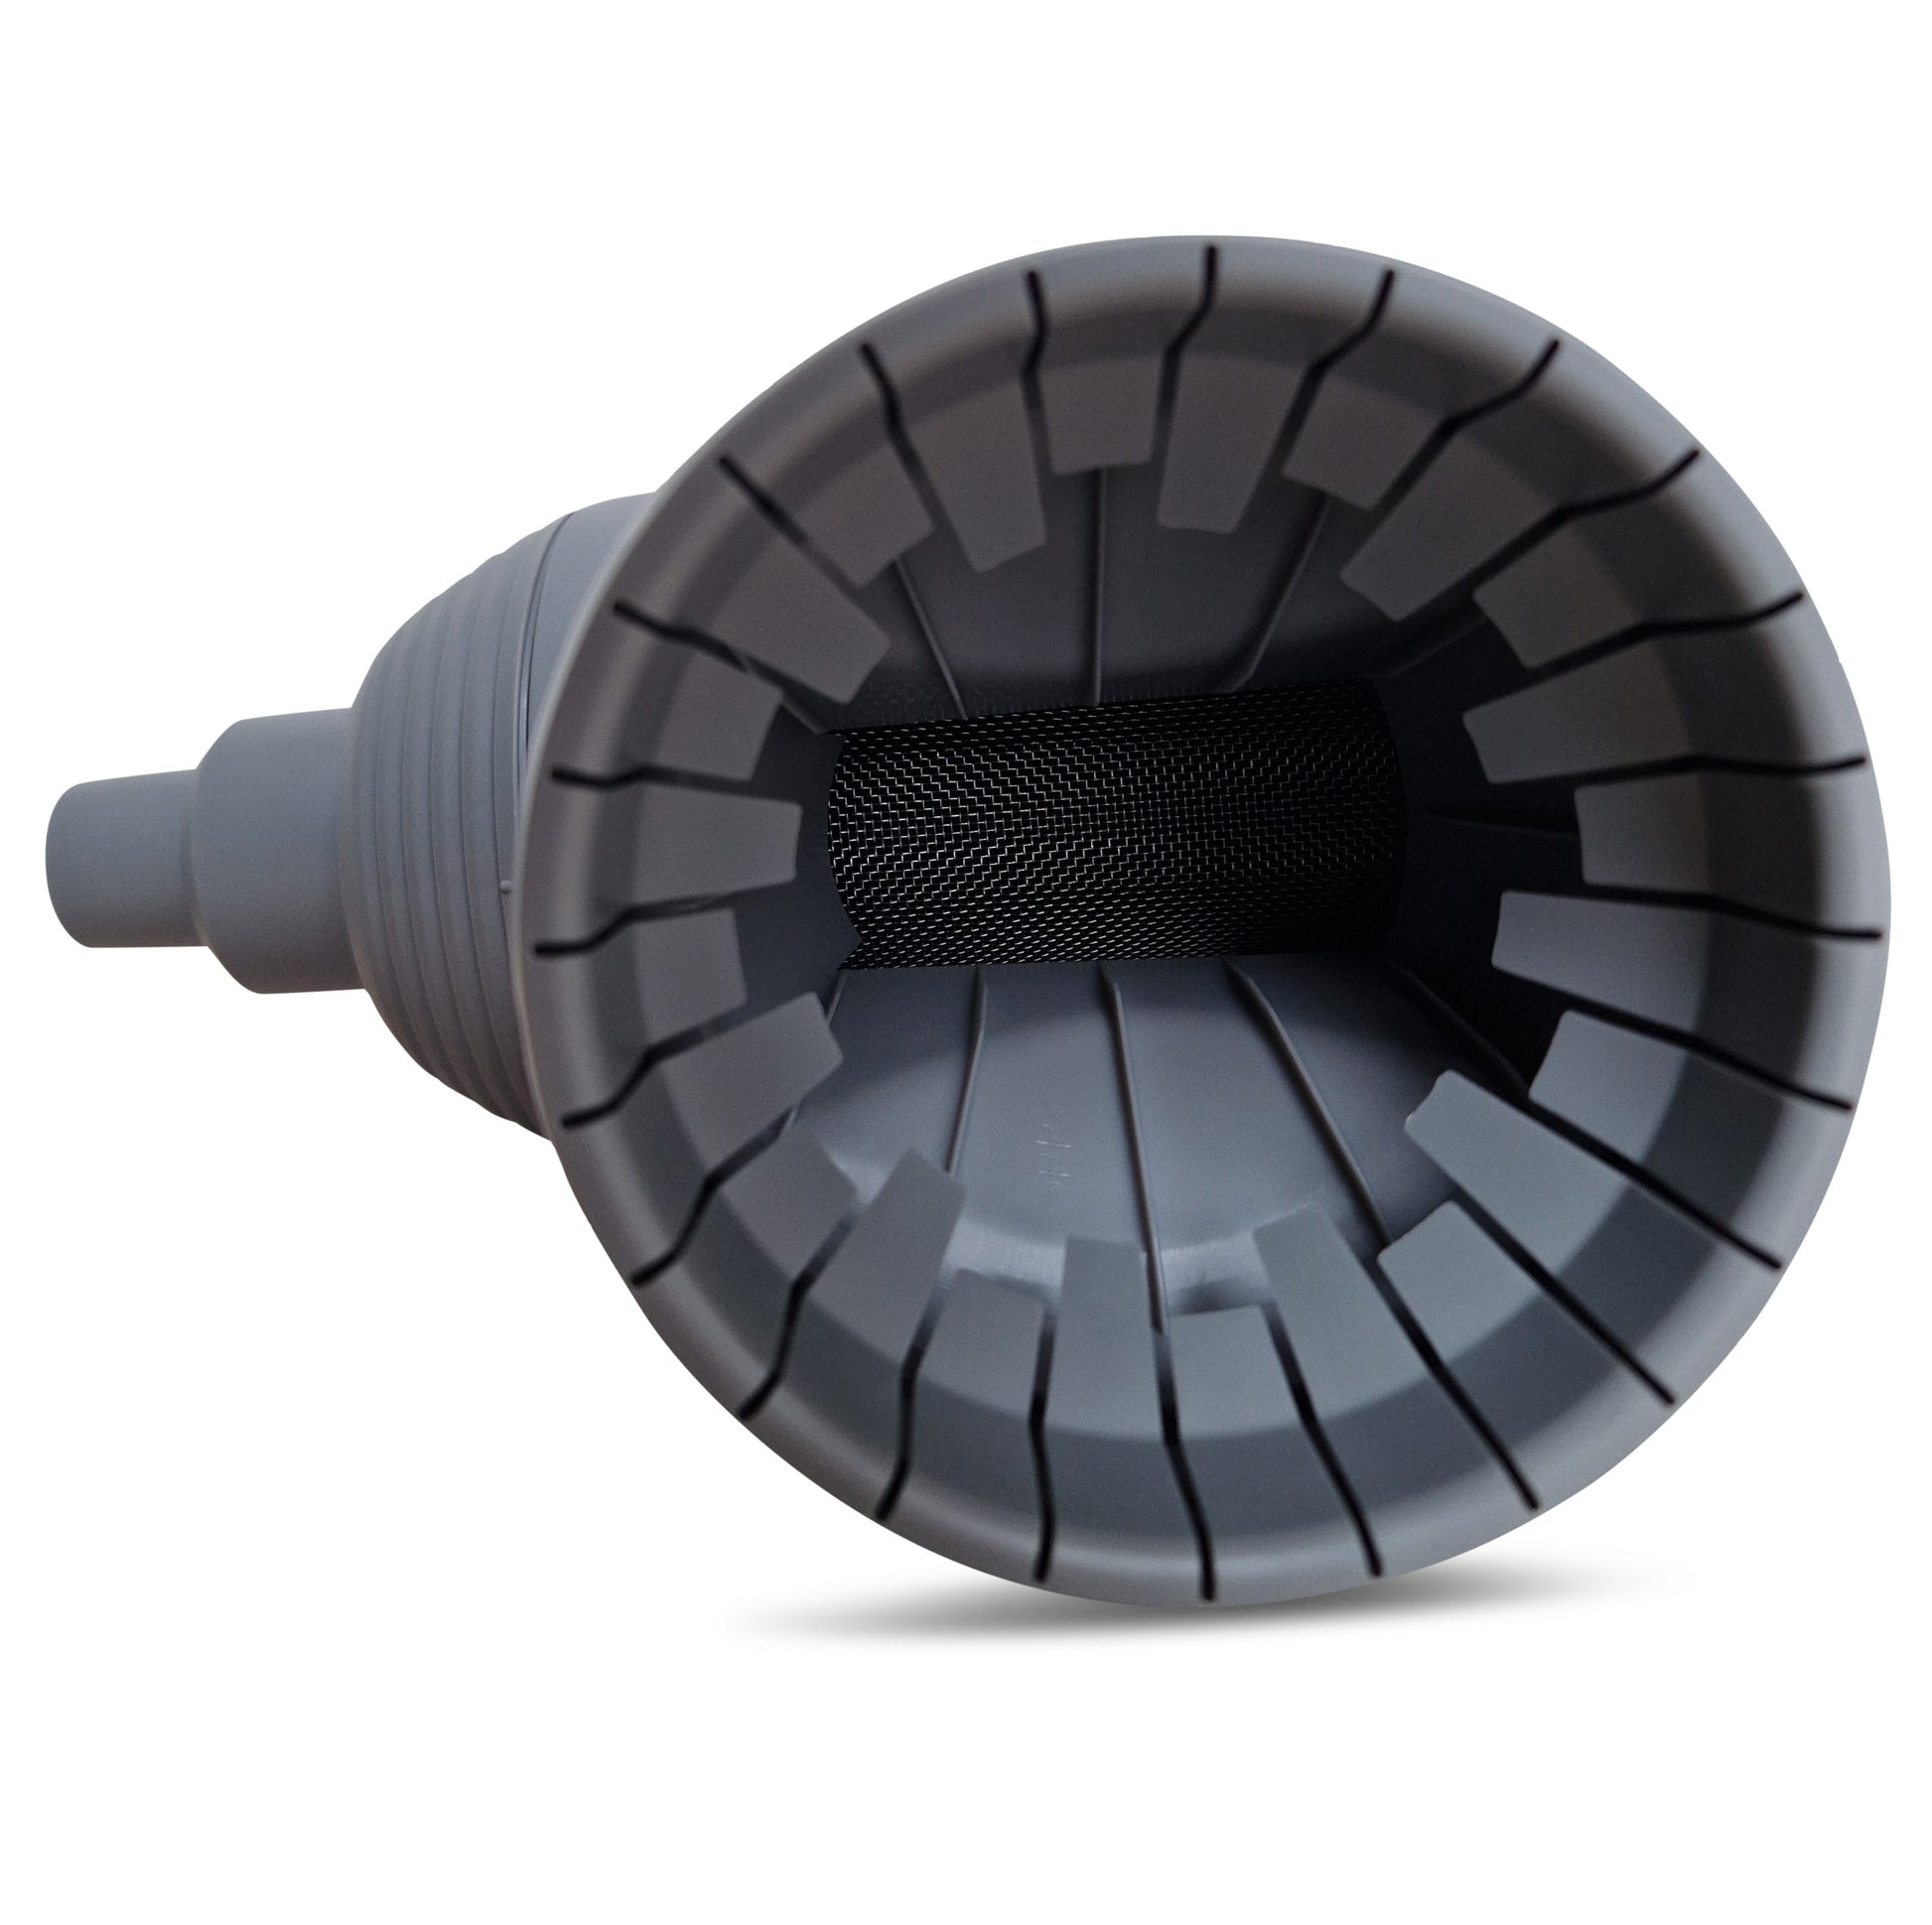 Eine Nahaufnahme eines YourCasa® Regensammlers [Downpipe70] mit gerippten Innenwänden und einem perforierten Kern, möglicherweise einem Lautsprecher oder einer schallabgebenden Anlage.